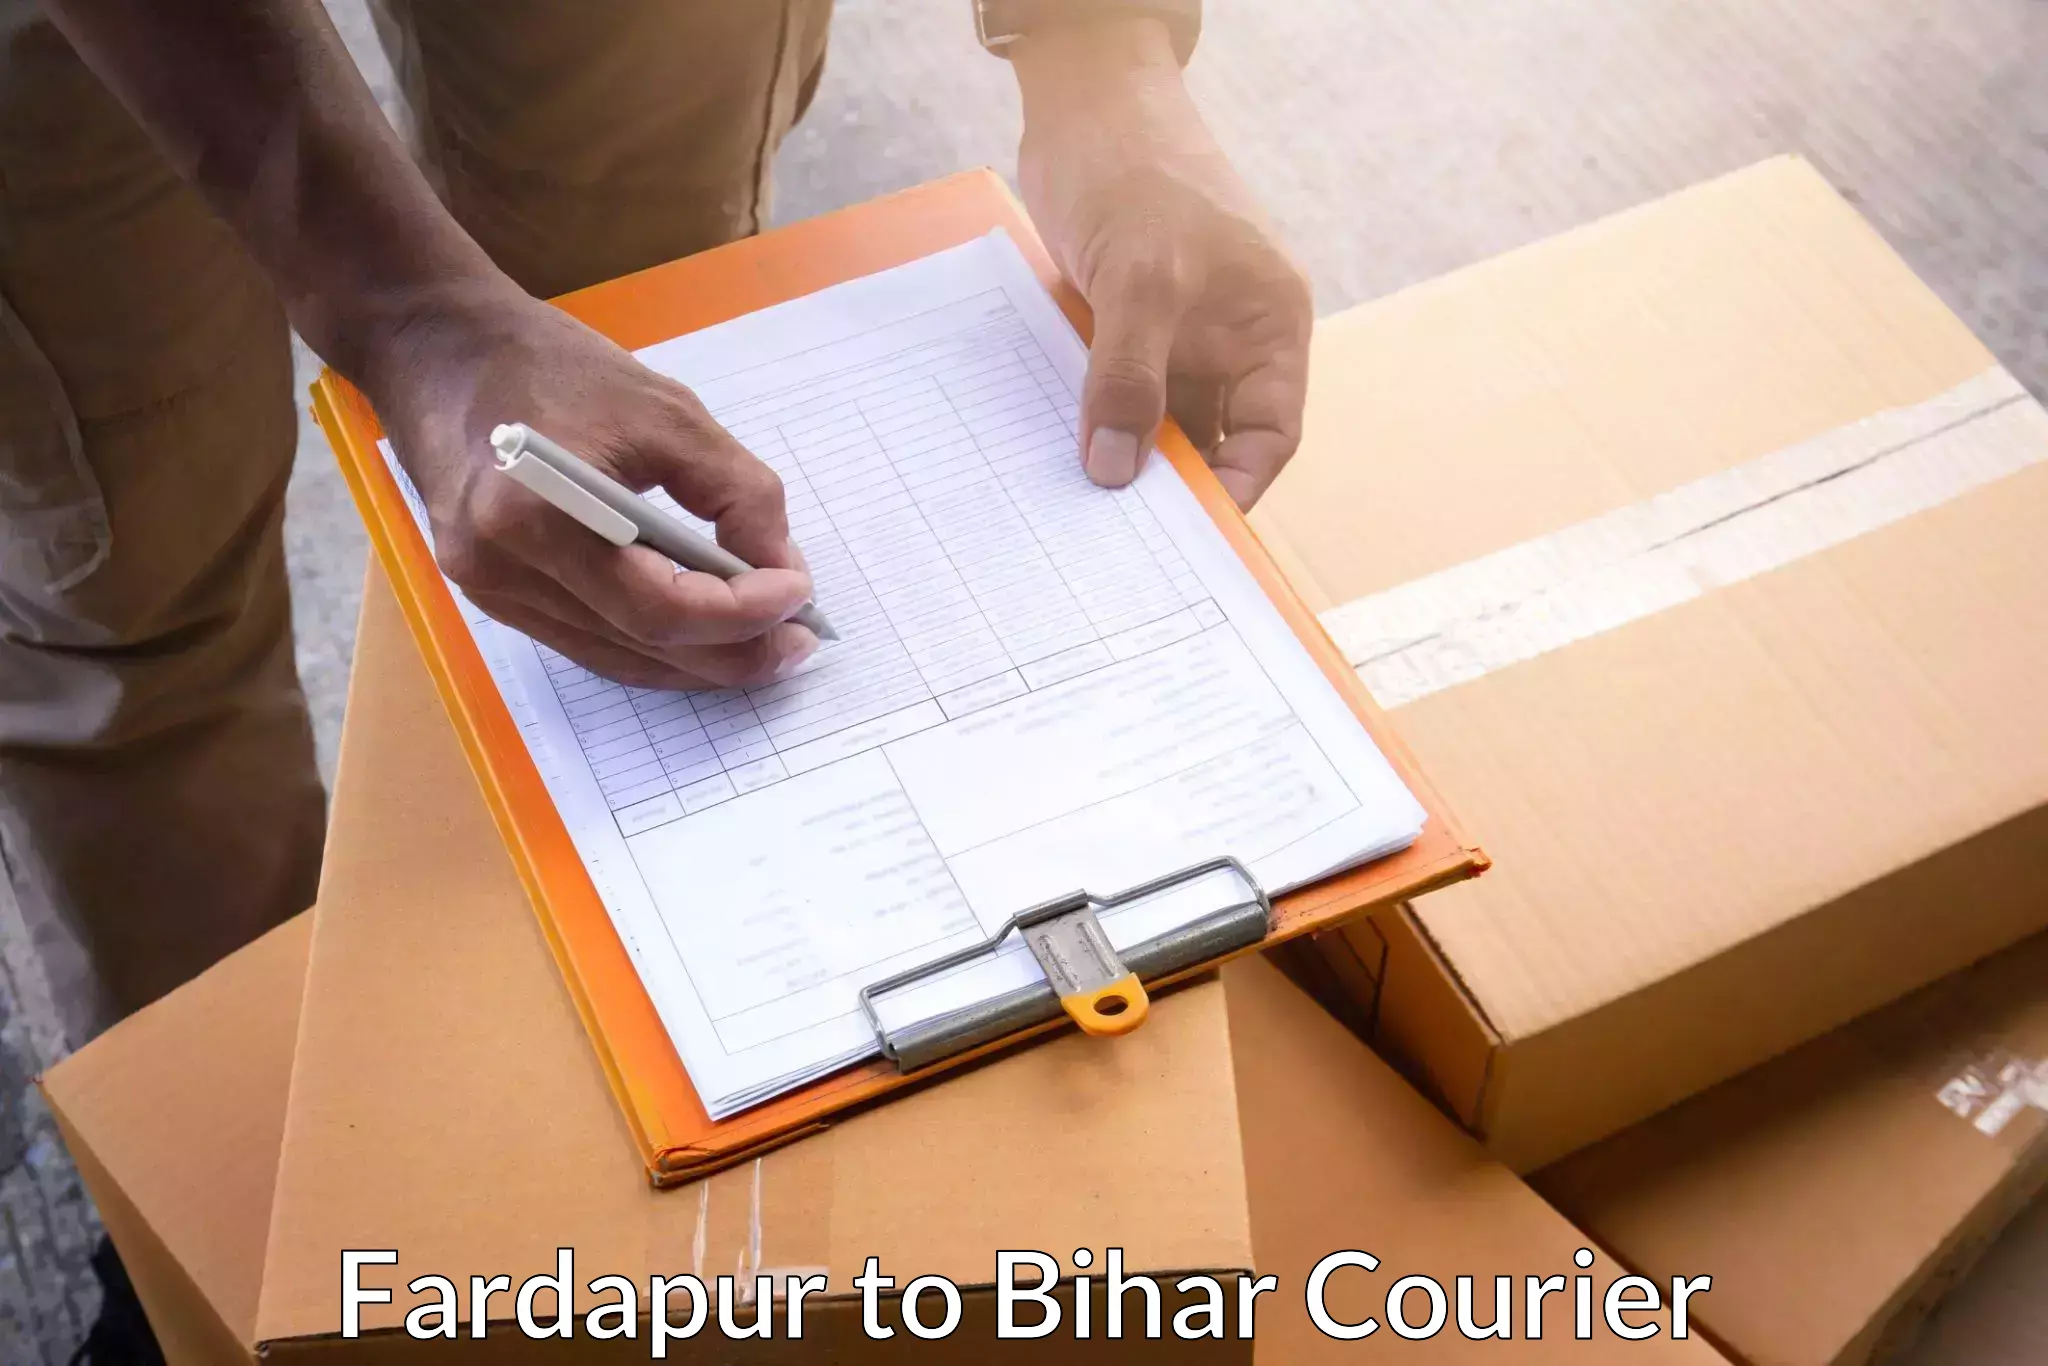 Cargo courier service Fardapur to Bihar